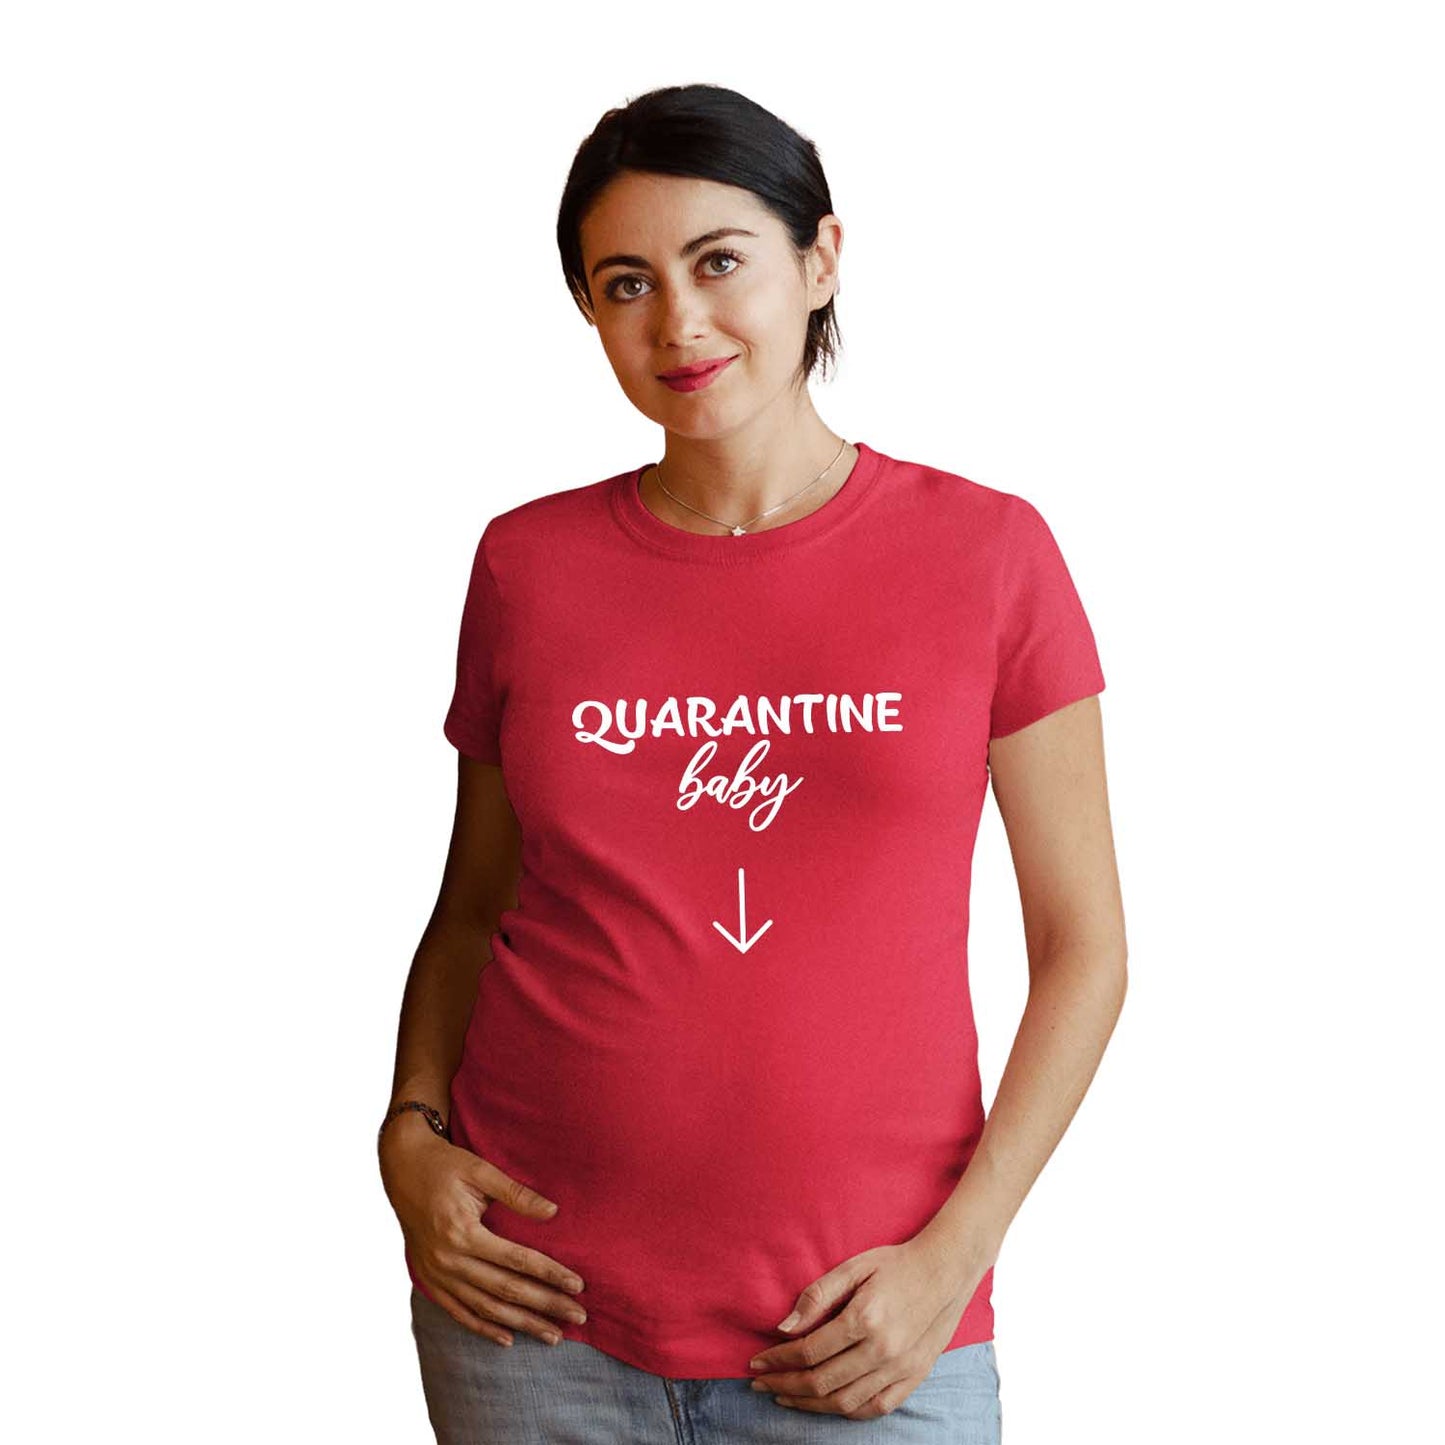 Quarantine Baby Maternity Tshirt